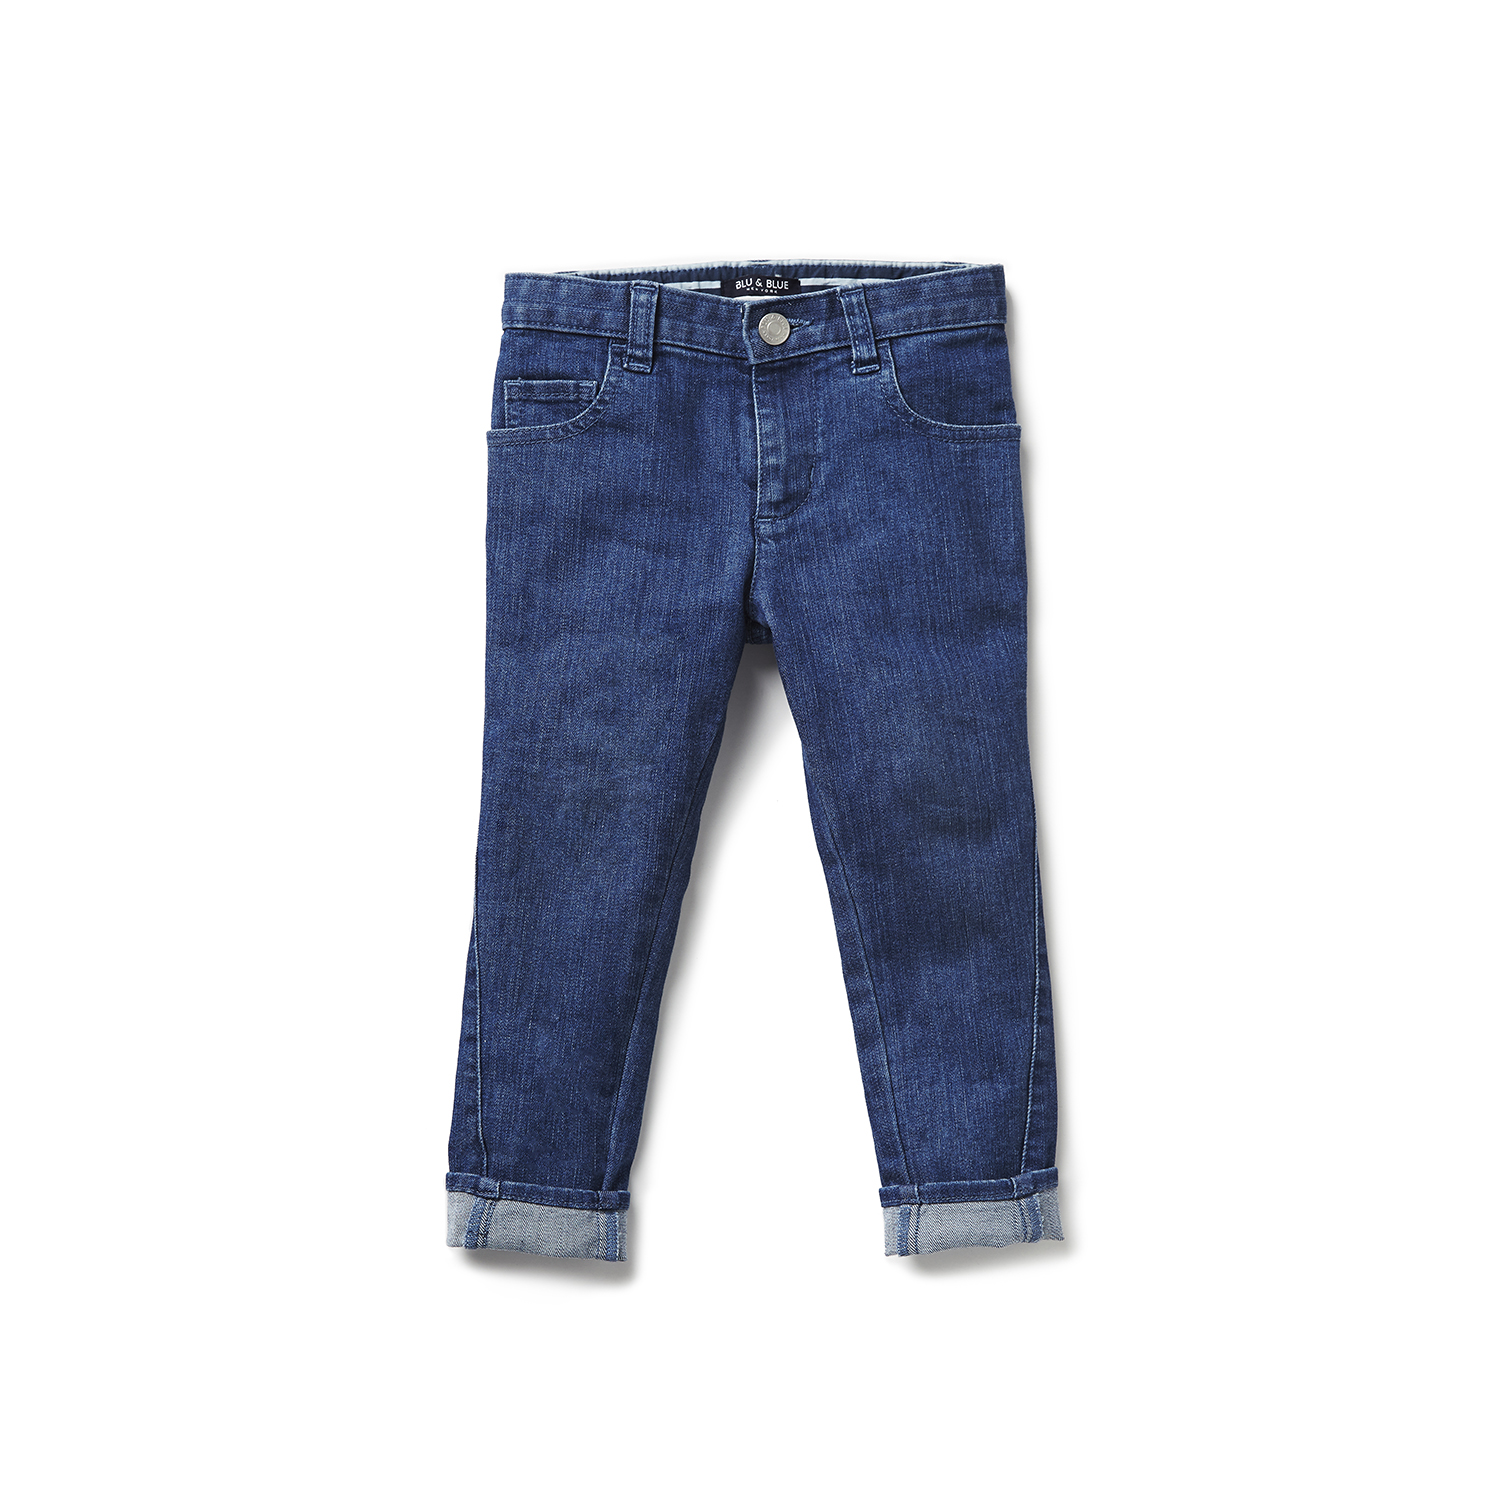 cotton blue jeans